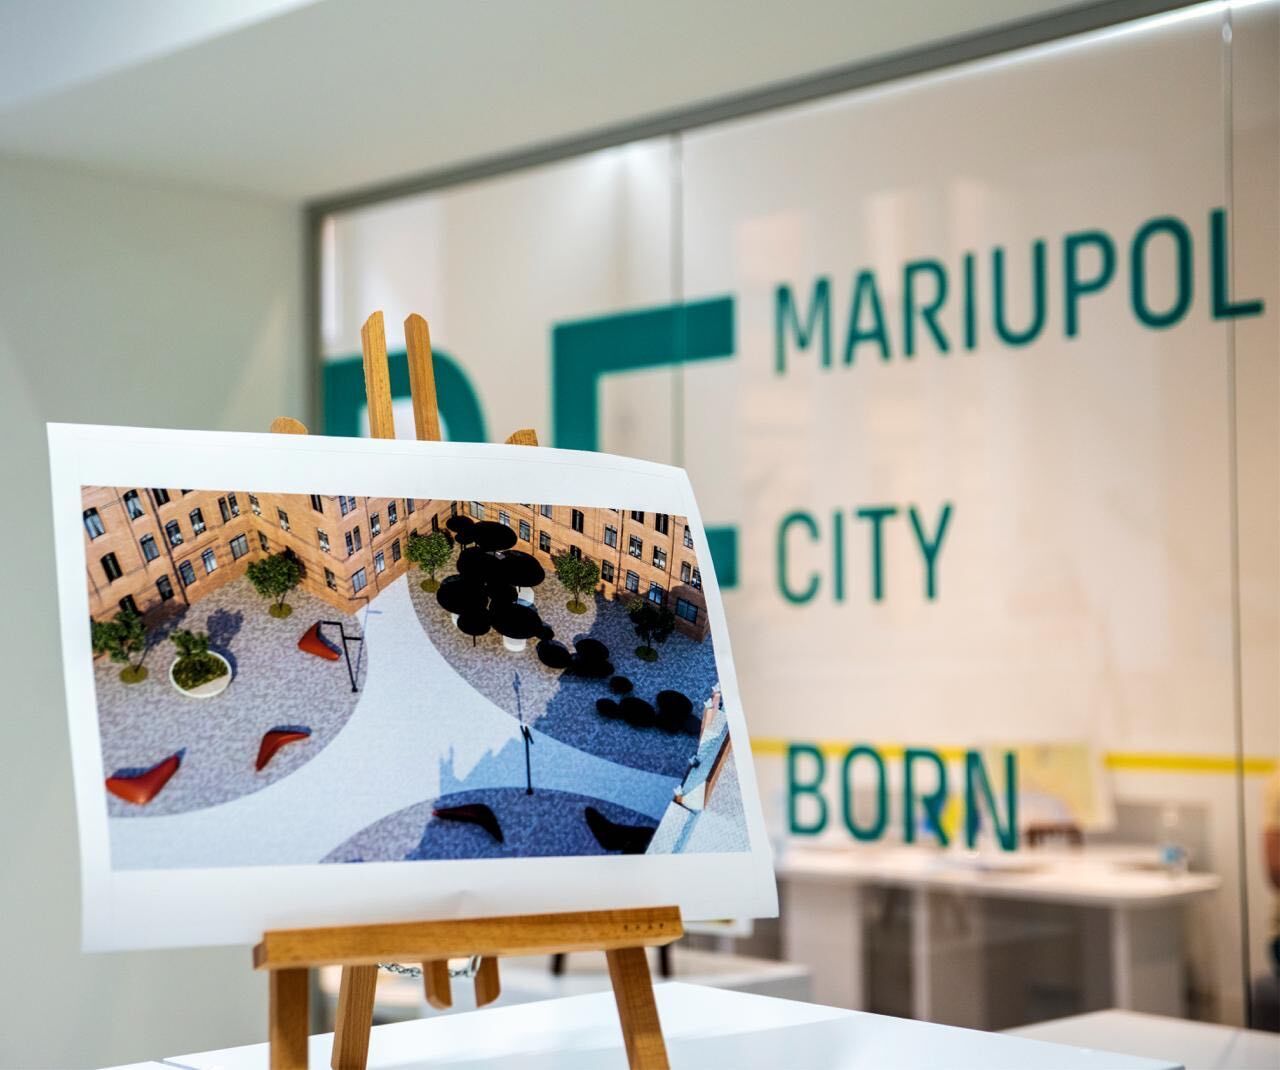 Проект Mariupol Reborn открыл простор для будущих архитекторов